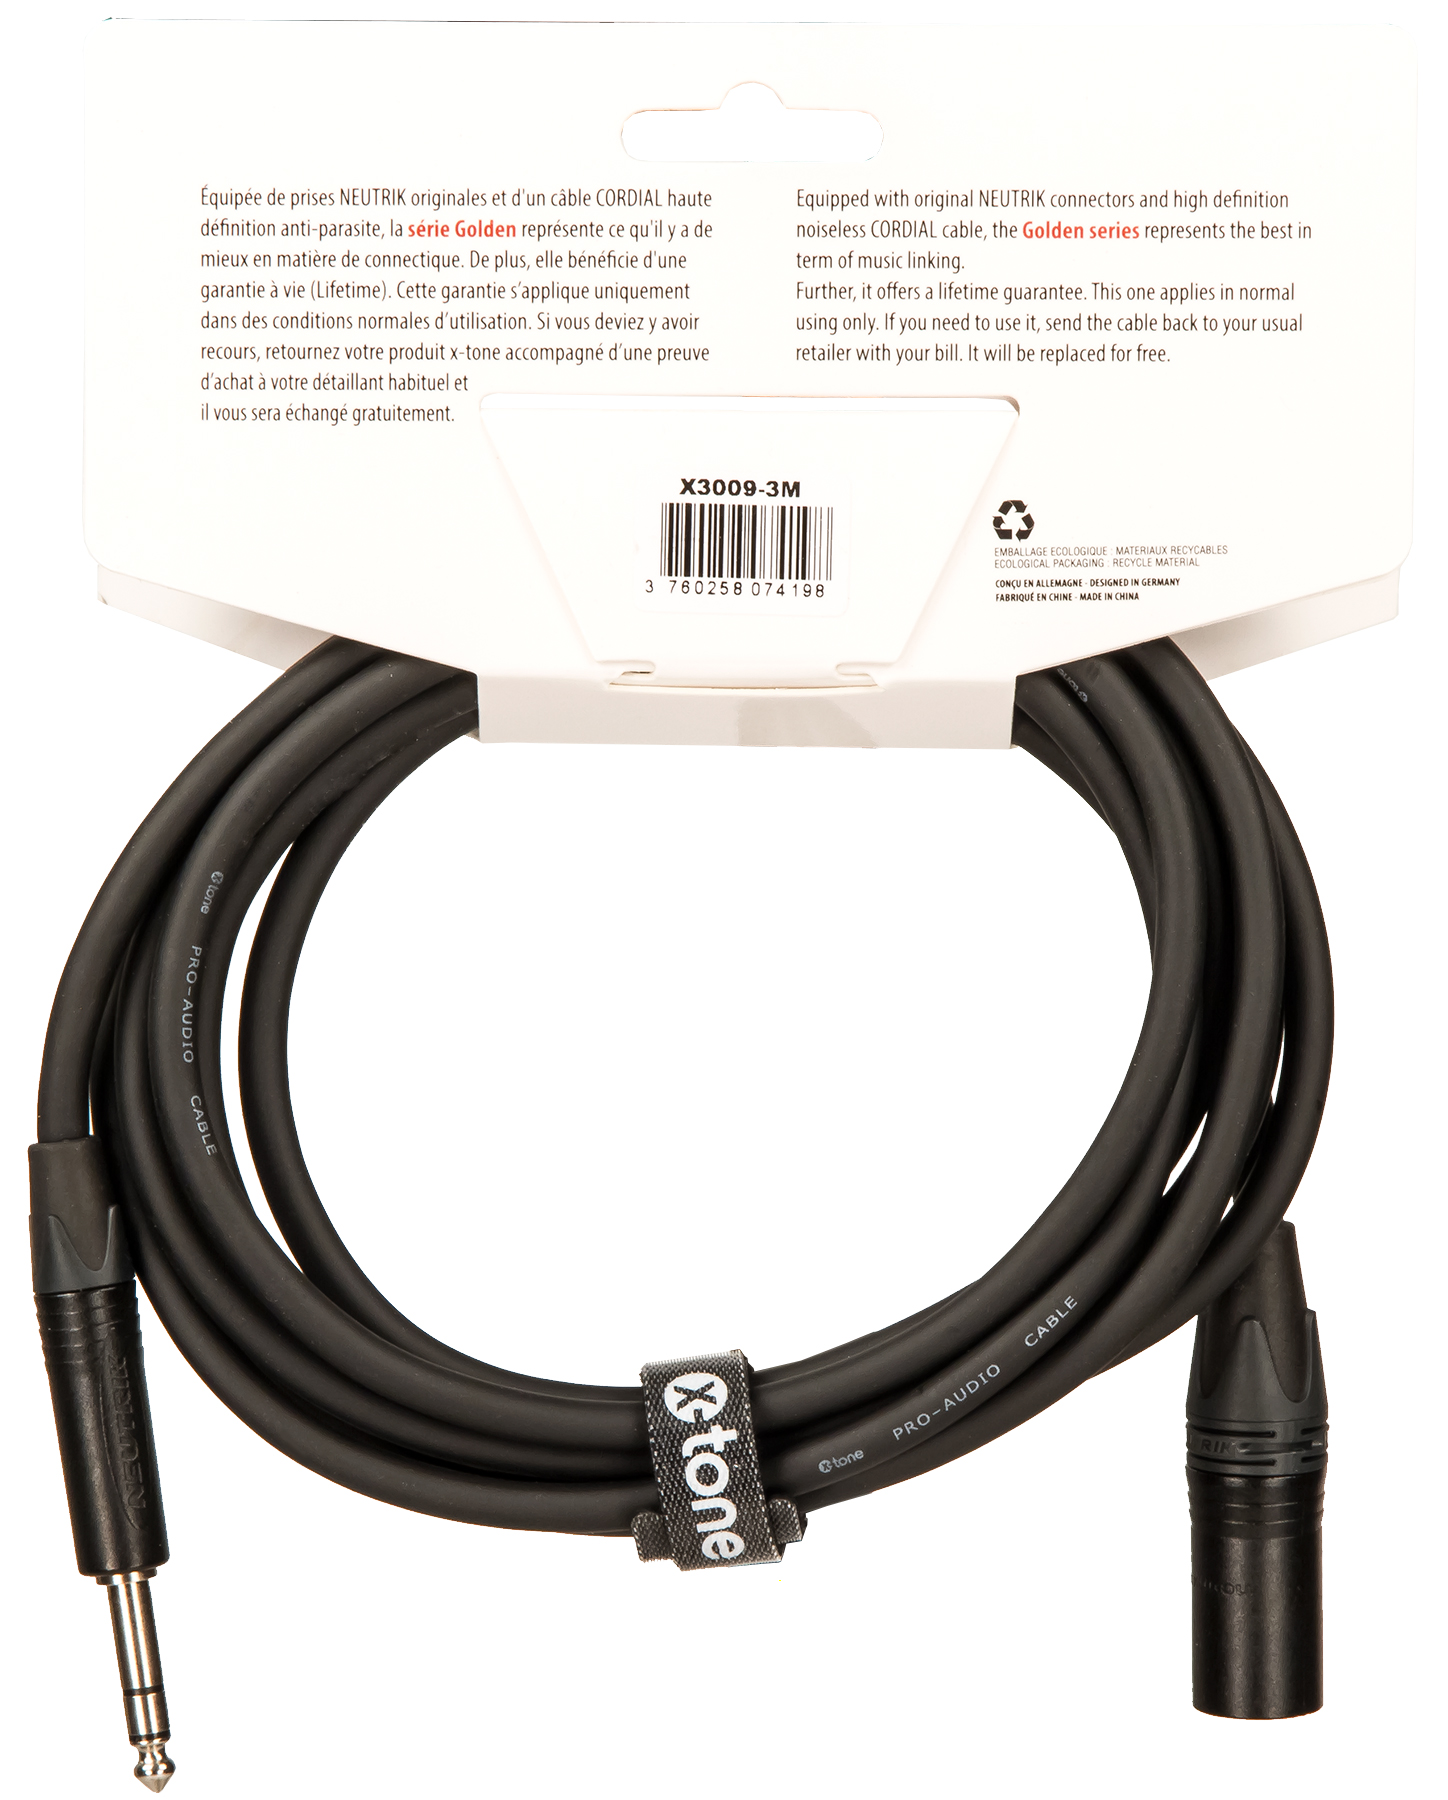 X-tone X3009-3m Cable Golden Series Neutrik Xlr(m) / Jack(m) 6,35 Trs - Kabel - Variation 1